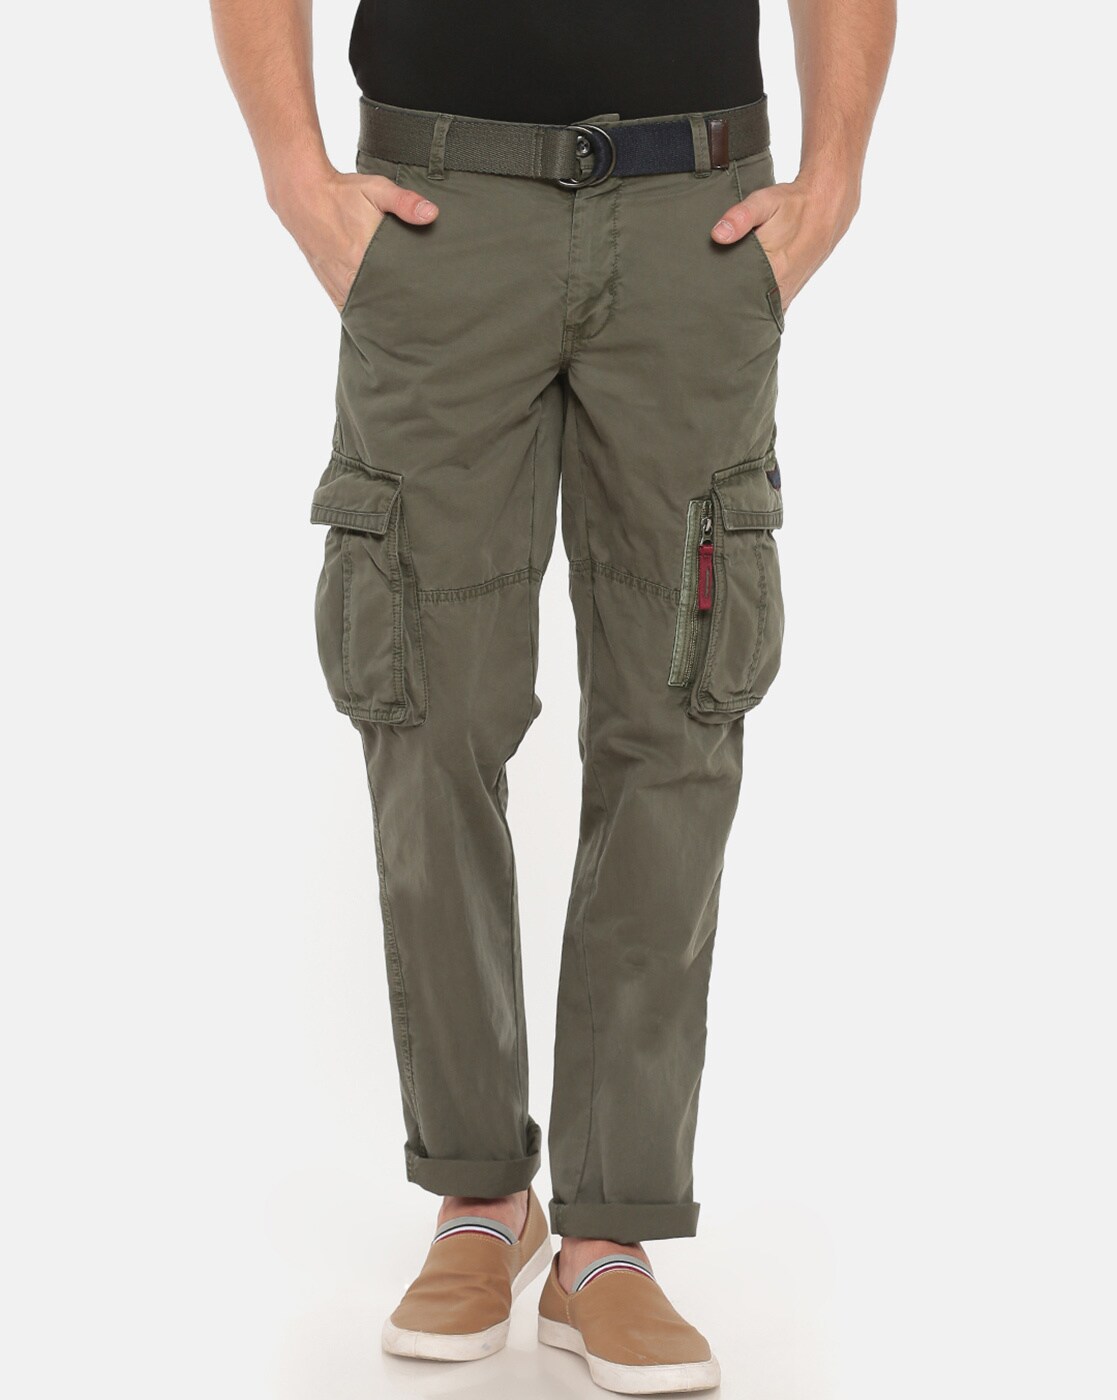 Buy tbase Mens Olive Regular Fit Cargo Pants for Men Online India